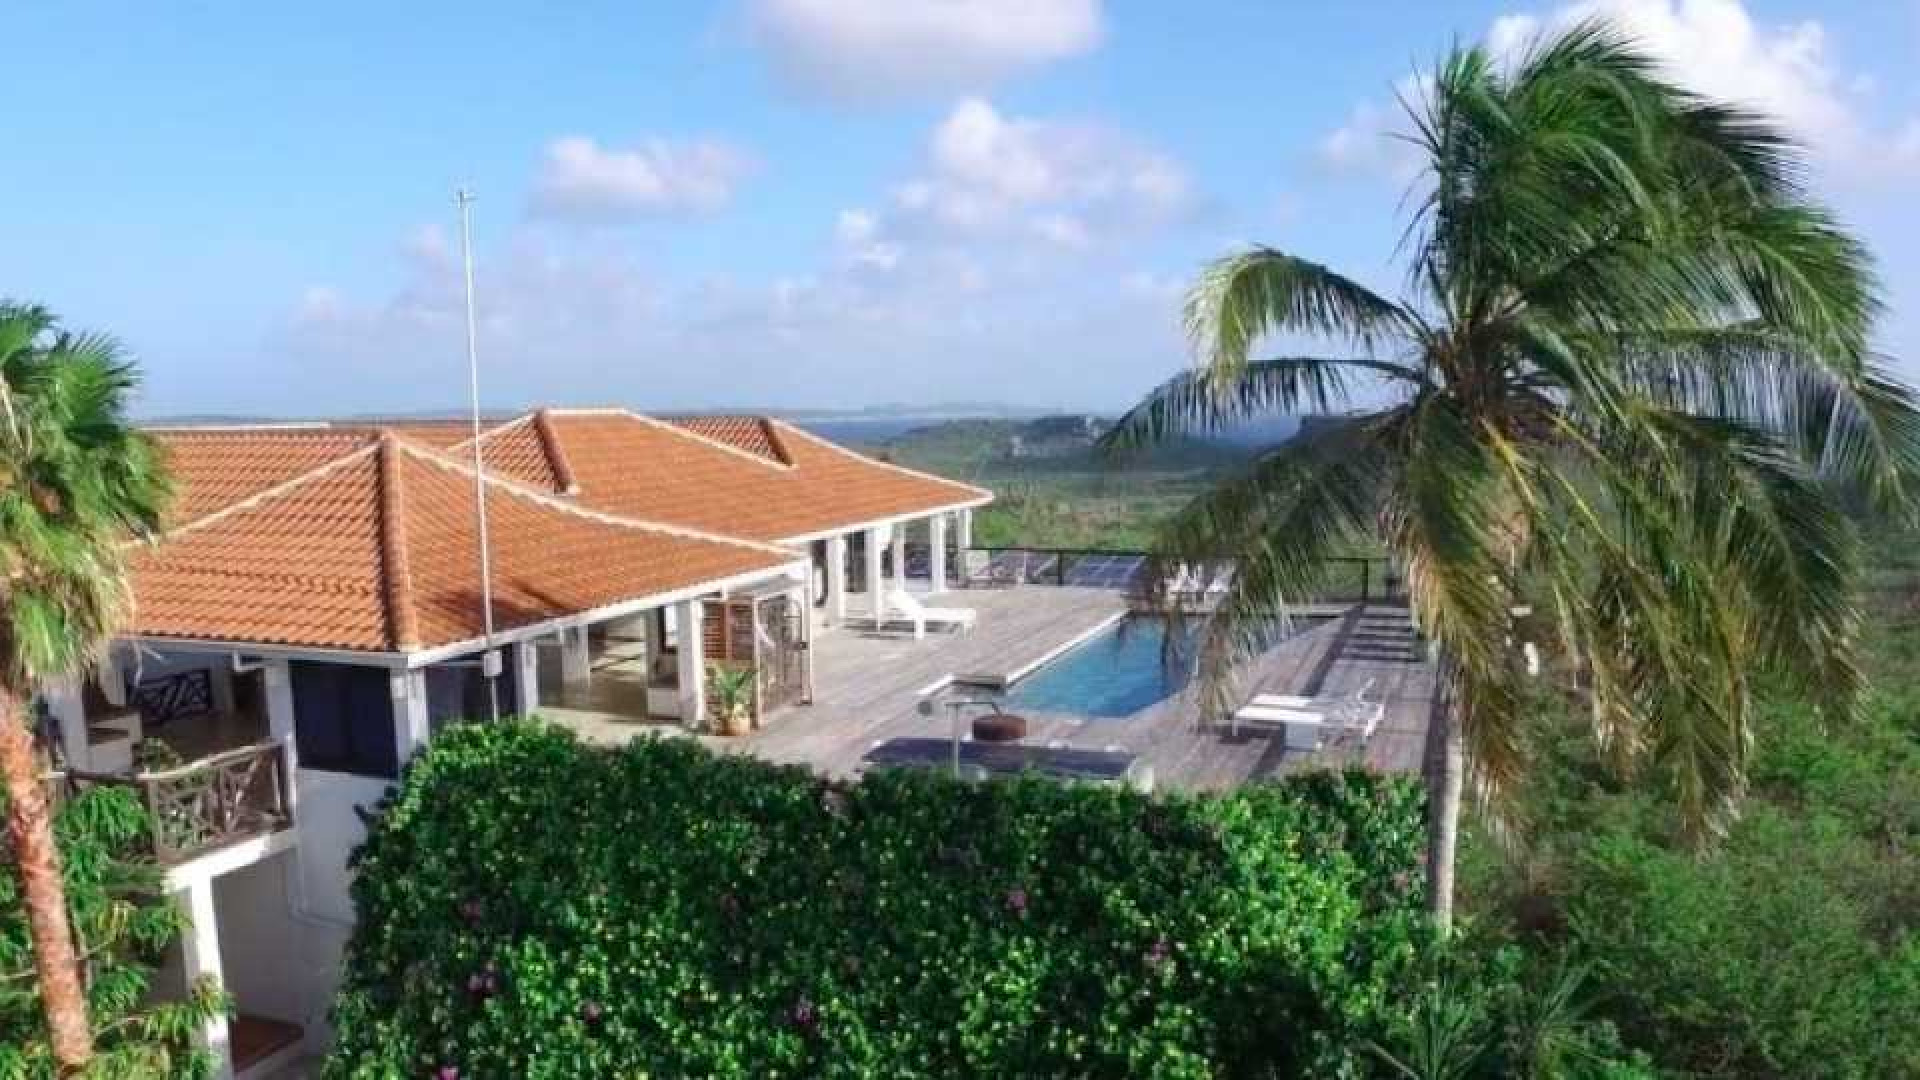 Barry Hay verlaagt vraagprijs van zijn miljoenen villa op Curacao. Zie foto's 2